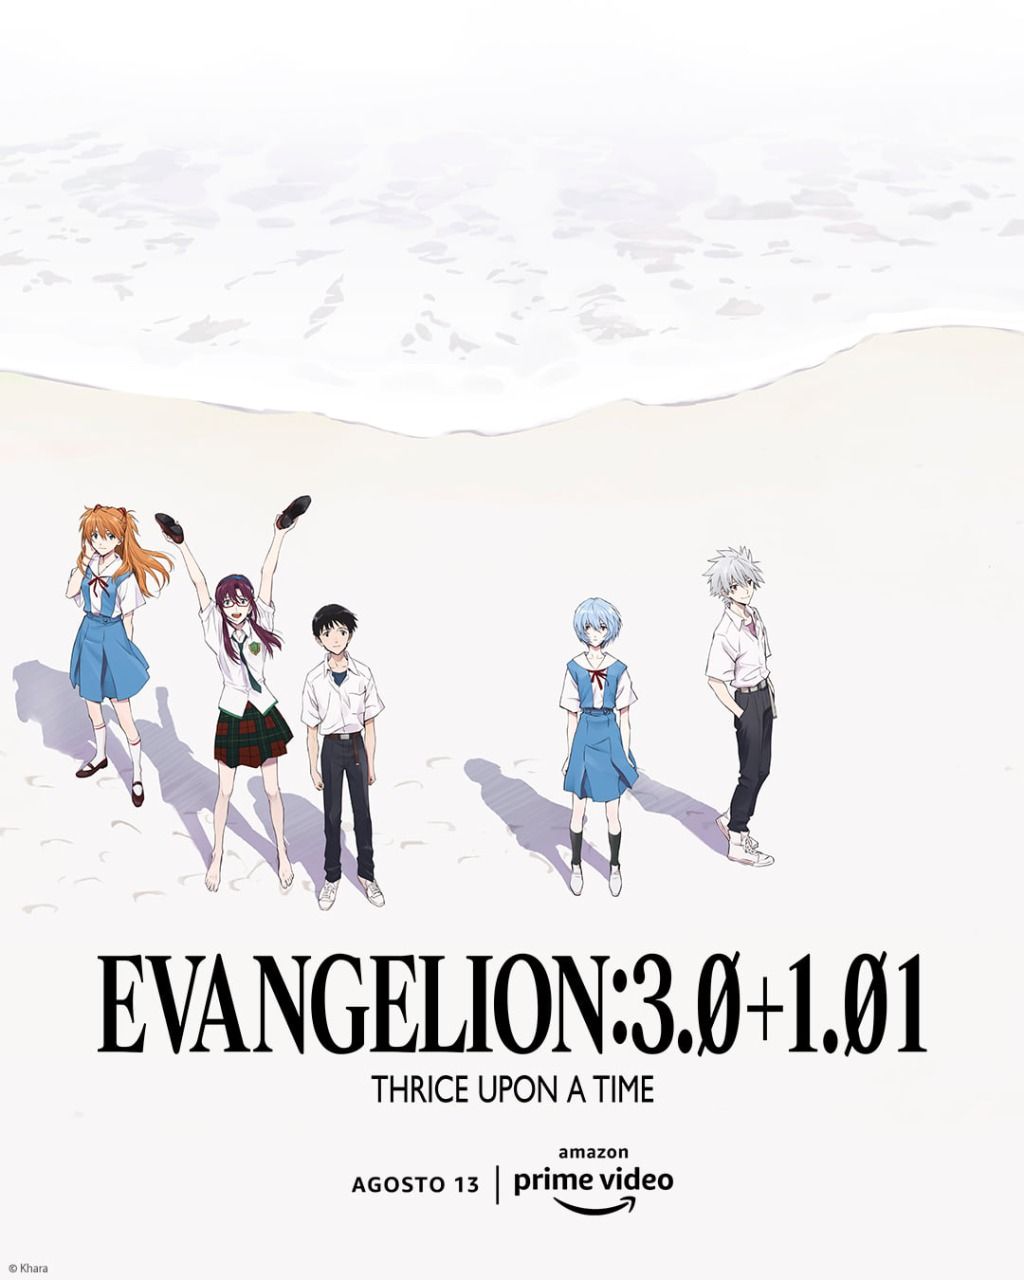 Nueva película de Evangelion se estrenará en Amazon Prime Video